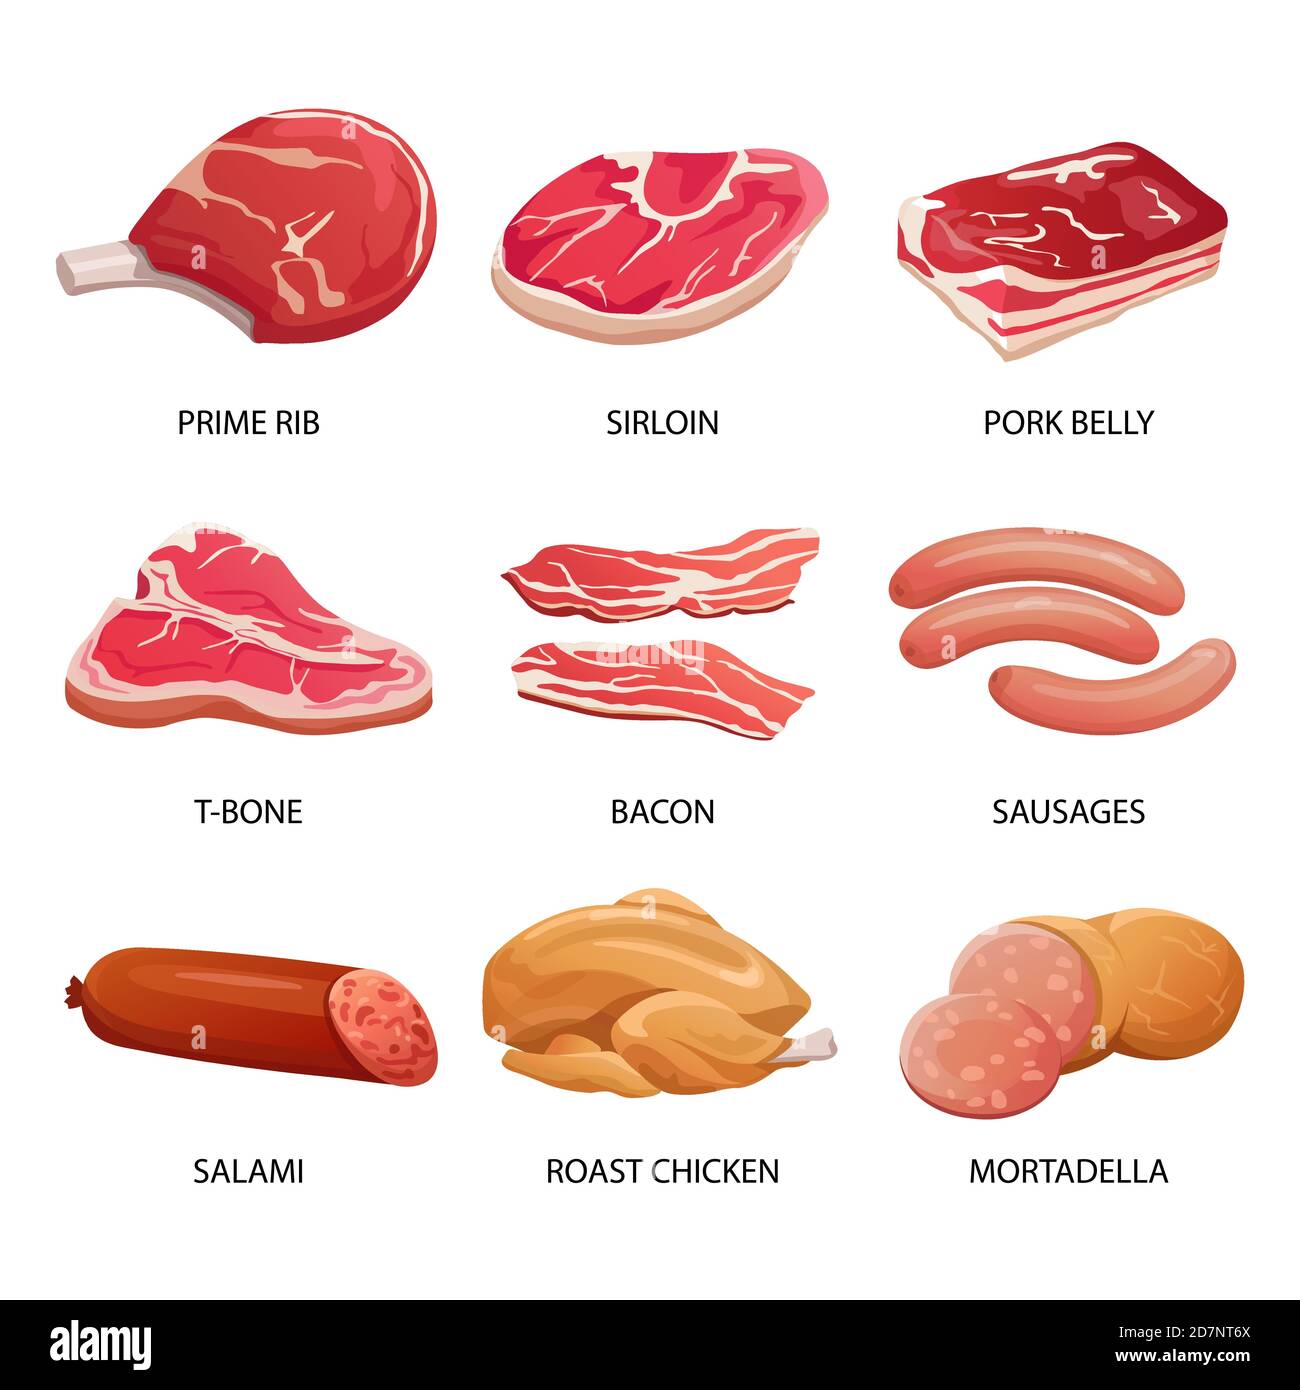 Arten von Fleisch und Fleischwaren Vektorgrafik. Fleischgerichte, Wurst und Rindfleisch, Schweinesteak und Lendenbraten Stock Vektor